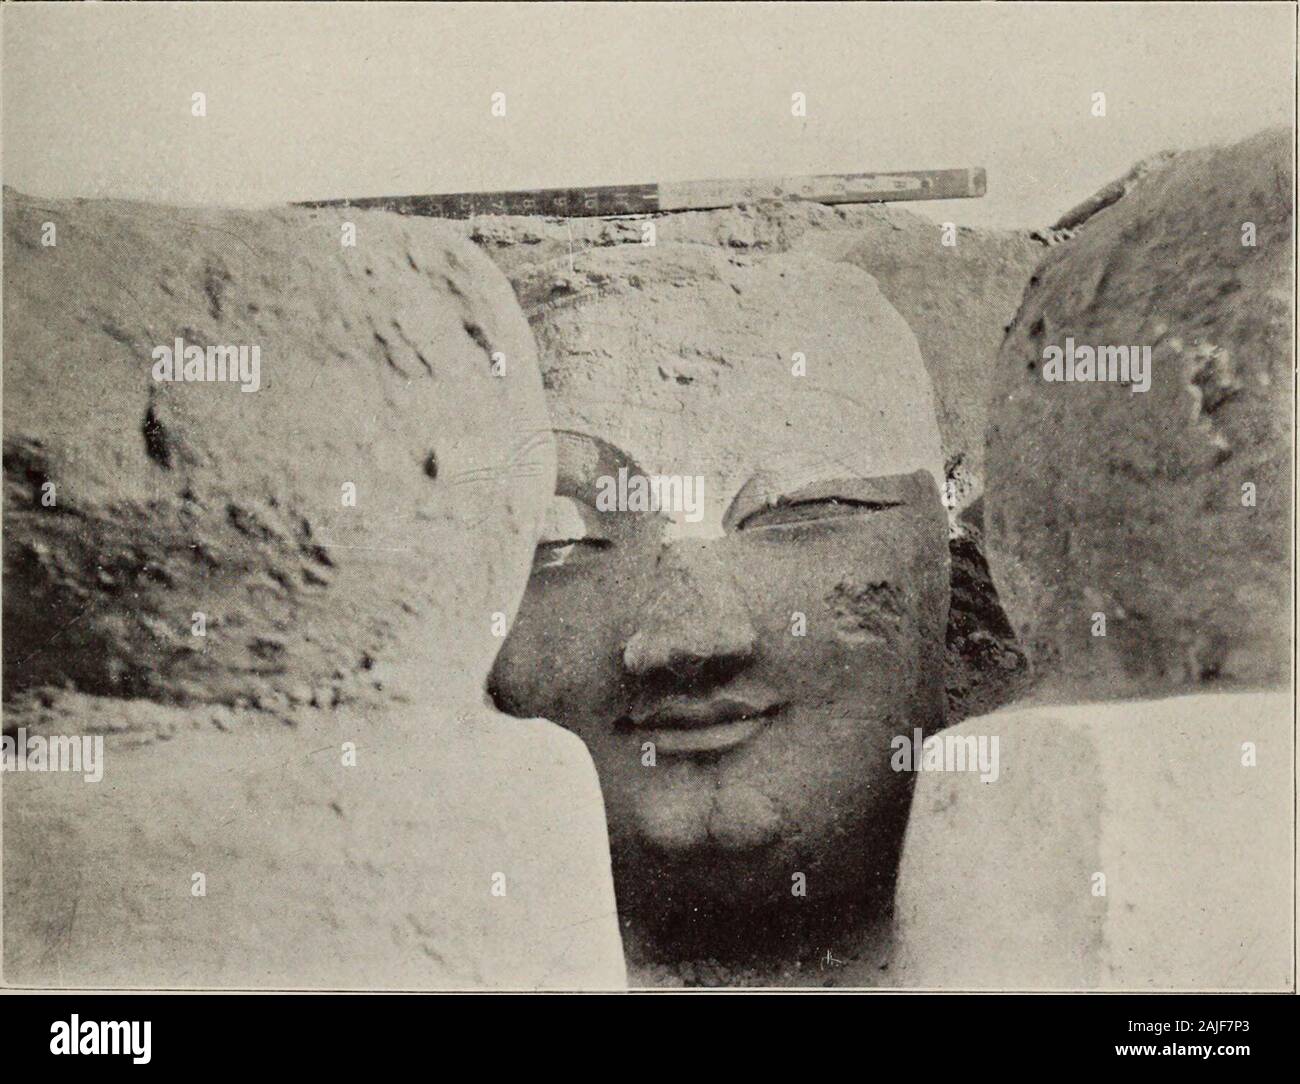 Ruinen der Wüste Cathay: persönliche Erzählung von Erkundungen in Zentralasien und westernmost China. Ich 40. Bleibt der KOLOSSALE ZAHLEN DER SITZENDEN BUDDHAS IM NORDOSTEN PASSAGEOF RUINIERT SCHREIN M. II., MIRAN SITE.. 141. Stuck LEITER DER kolossalen Buddha Figur, als entdeckt zwischen STATUEBASES DES ZERSTÖRTEN HEILIGTUM M.11., MIRAN WEBSITE. CH. XL-Köpfe von kolossalen Buddhas 455 von der Klassischen Modelle. Sogar die welligen Kanten der Festoon - wie Zöpfe hängen von den Armen withexactness reproduziert wurden. Es war unmöglich, daran zu zweifeln, dass die Konstruktion dieses zerstörten Tempel datiert zurück auf einen Zeitraum longanterior auf die Stockfoto